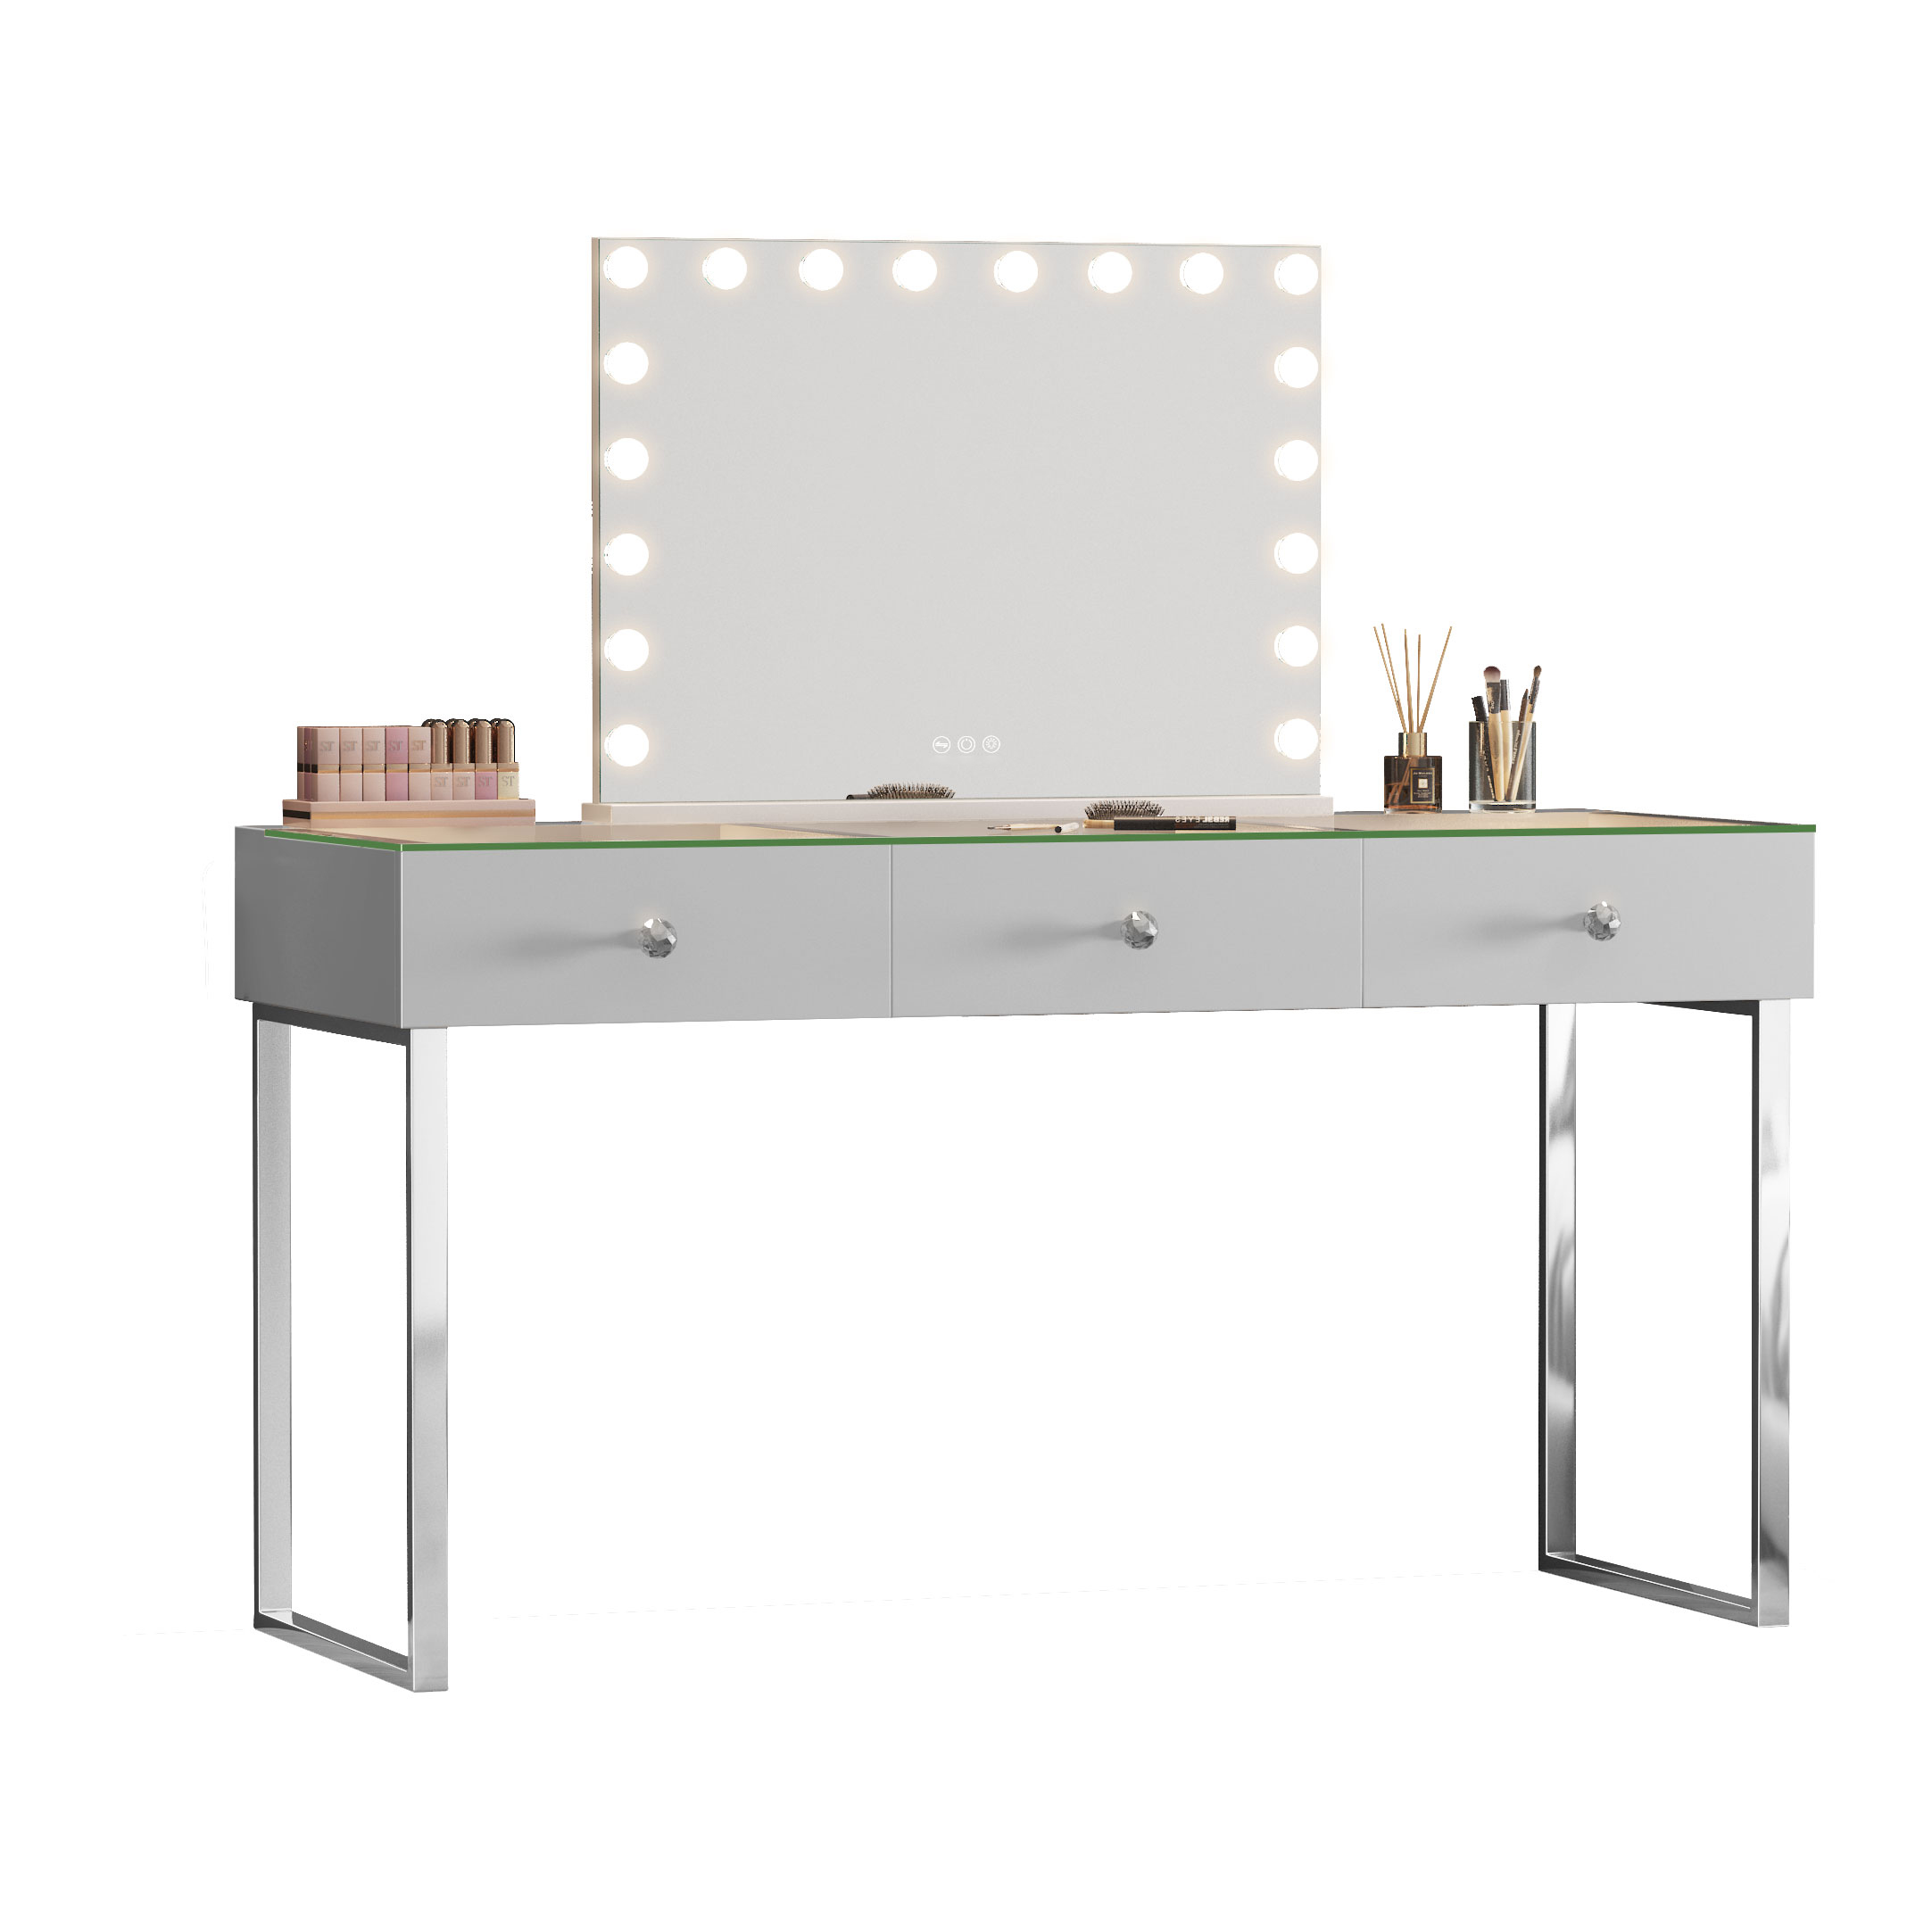 Makeup vanity desk with 3 storage drawers